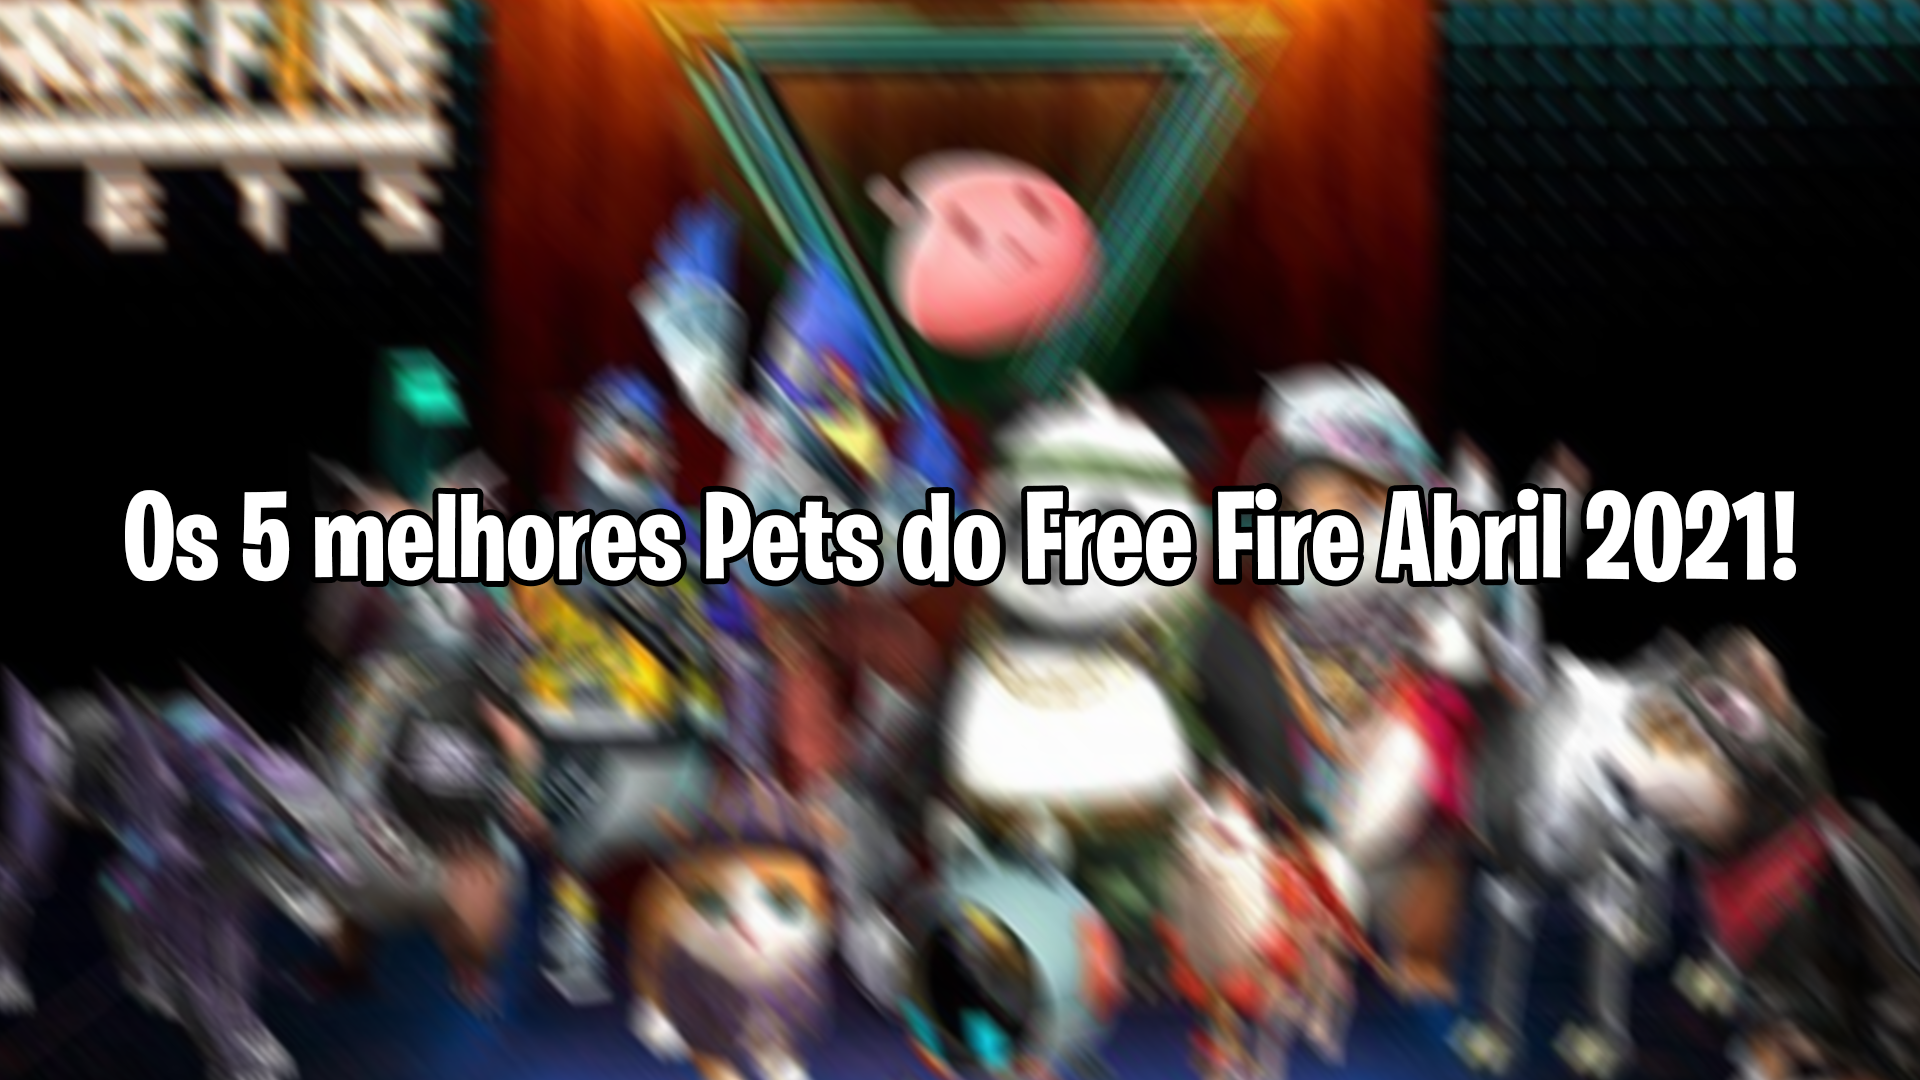 Free Fire: Drakinho é o novo pet do jogo; conheça habilidade, free fire